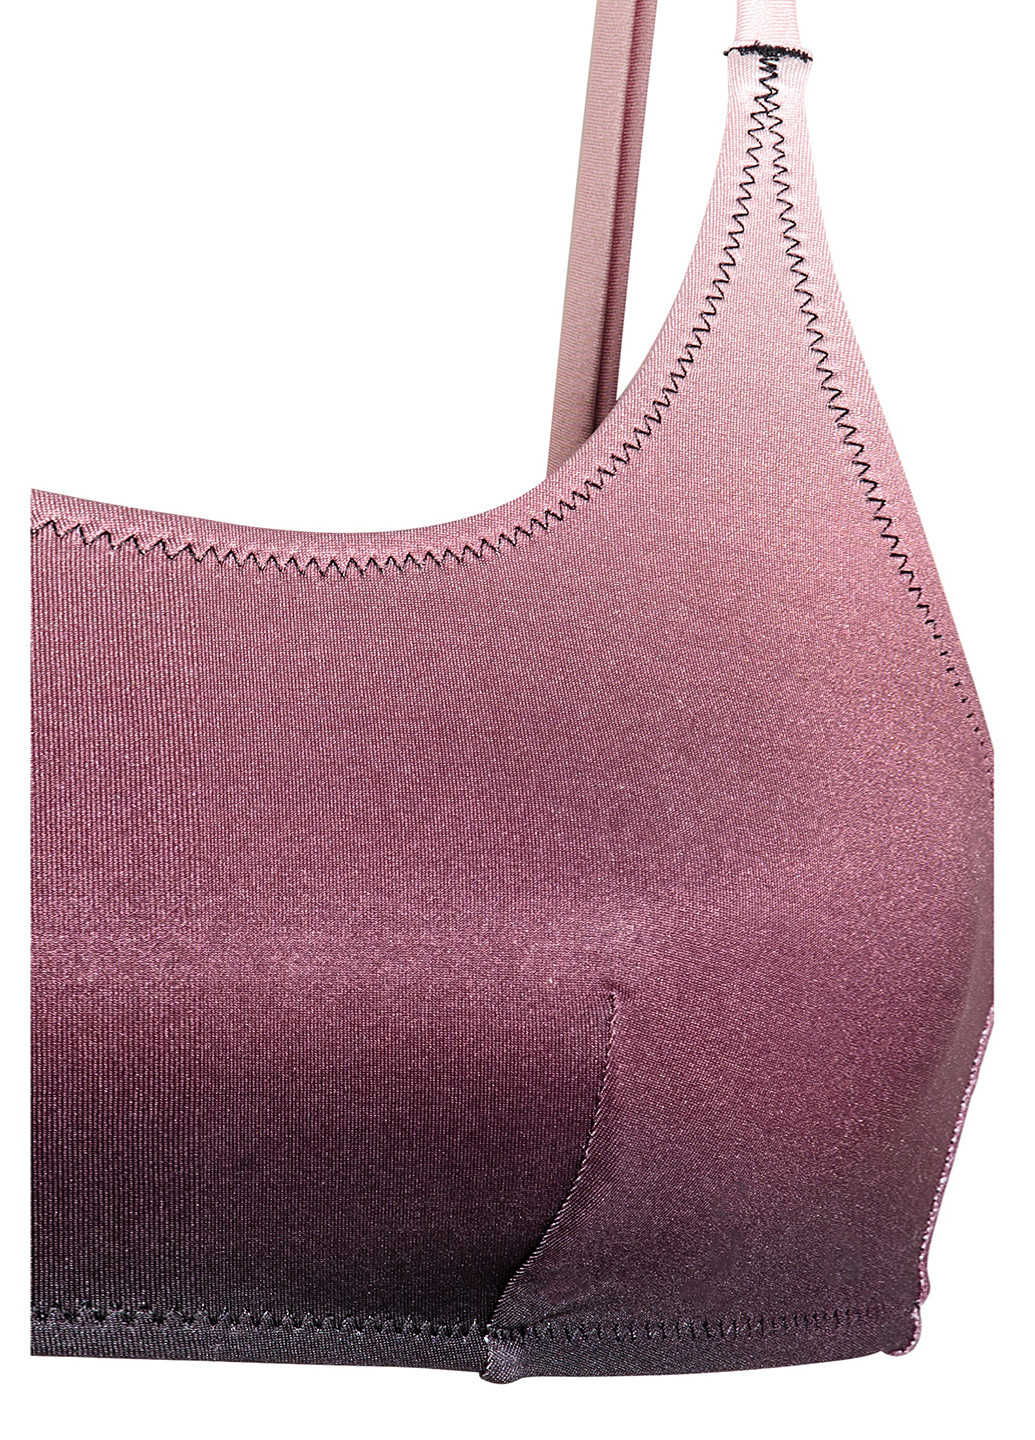 Купальный лиф H&M топ градиент тёмно-фиолетовый пляжный трикотаж, полиэстер